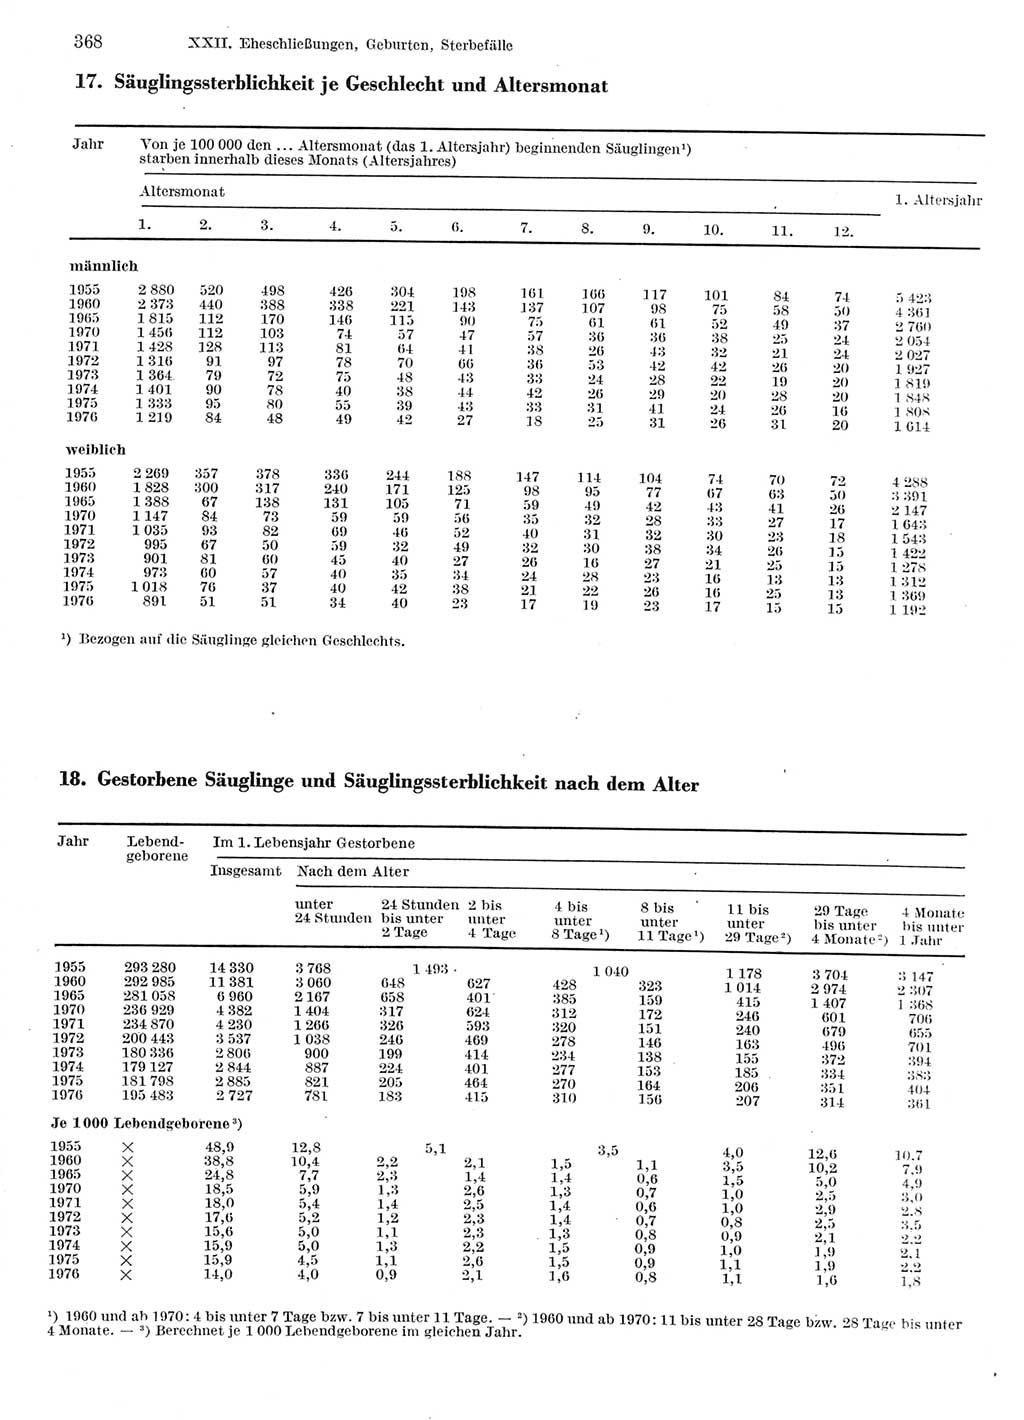 Statistisches Jahrbuch der Deutschen Demokratischen Republik (DDR) 1978, Seite 368 (Stat. Jb. DDR 1978, S. 368)